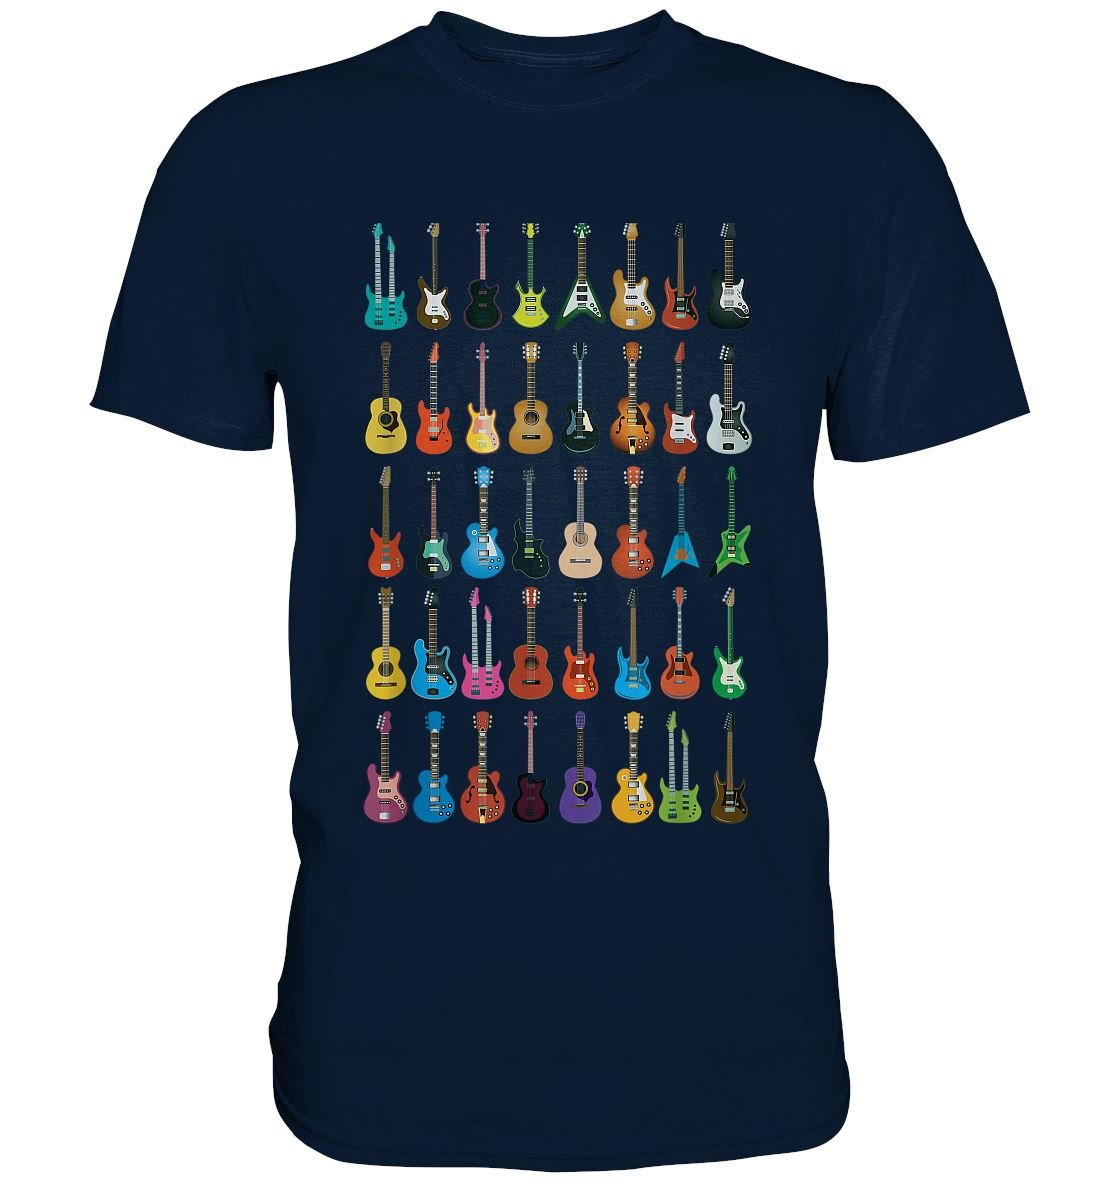 Verschiedene Gitarren - Premium Shirt - BINYA